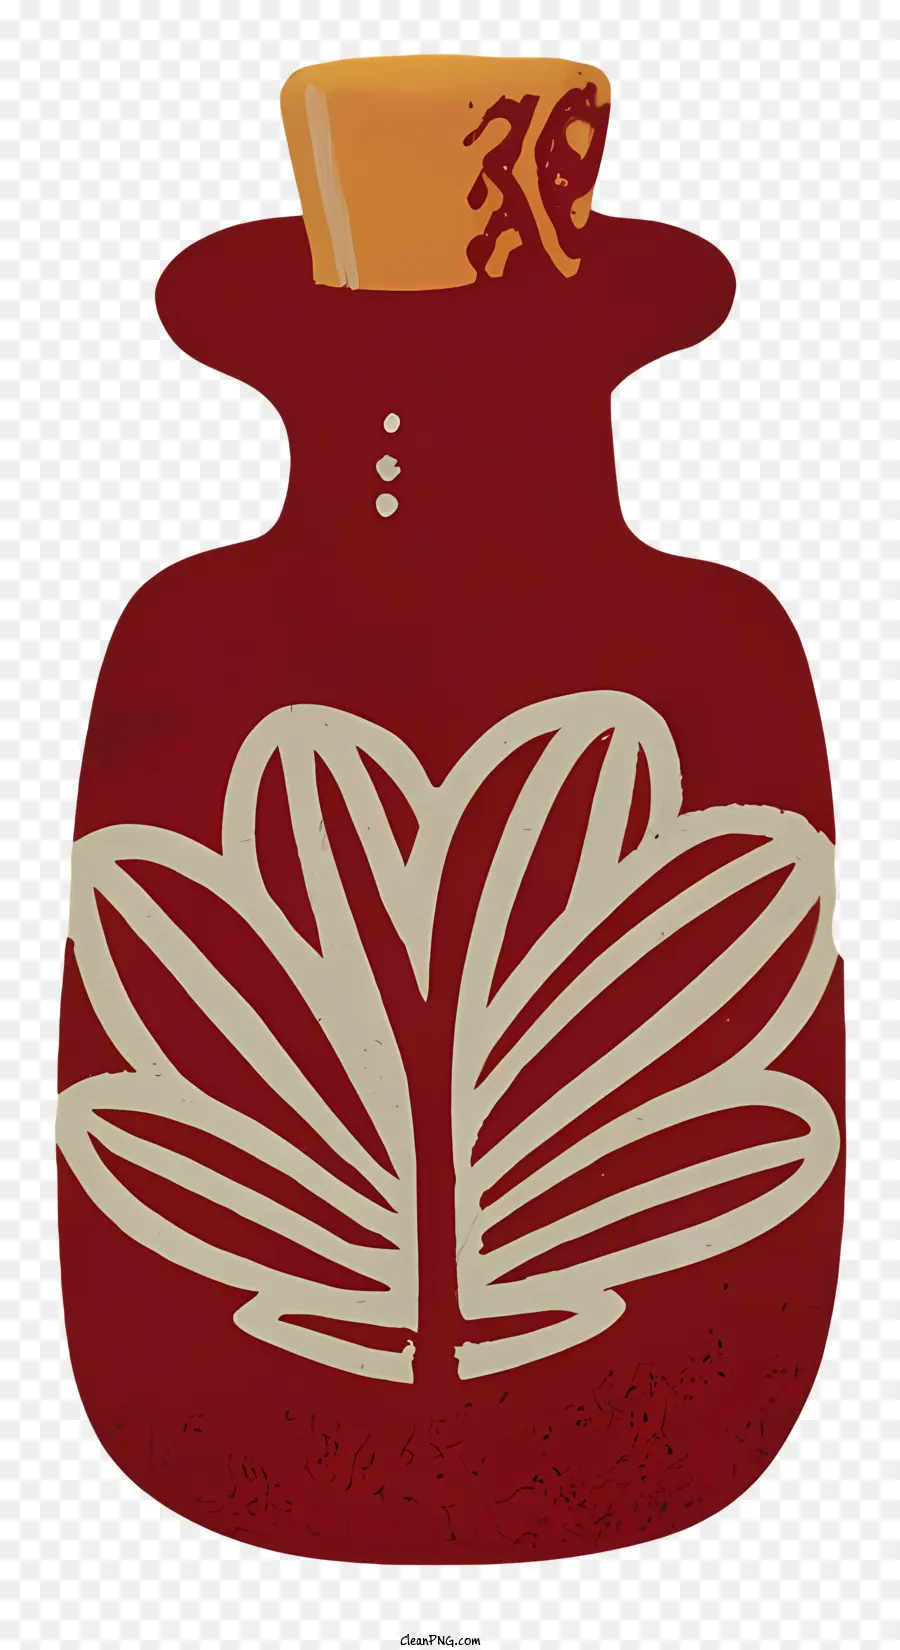 motivo floreale - Vaso rosso con coperchio giallo, foglia bianca